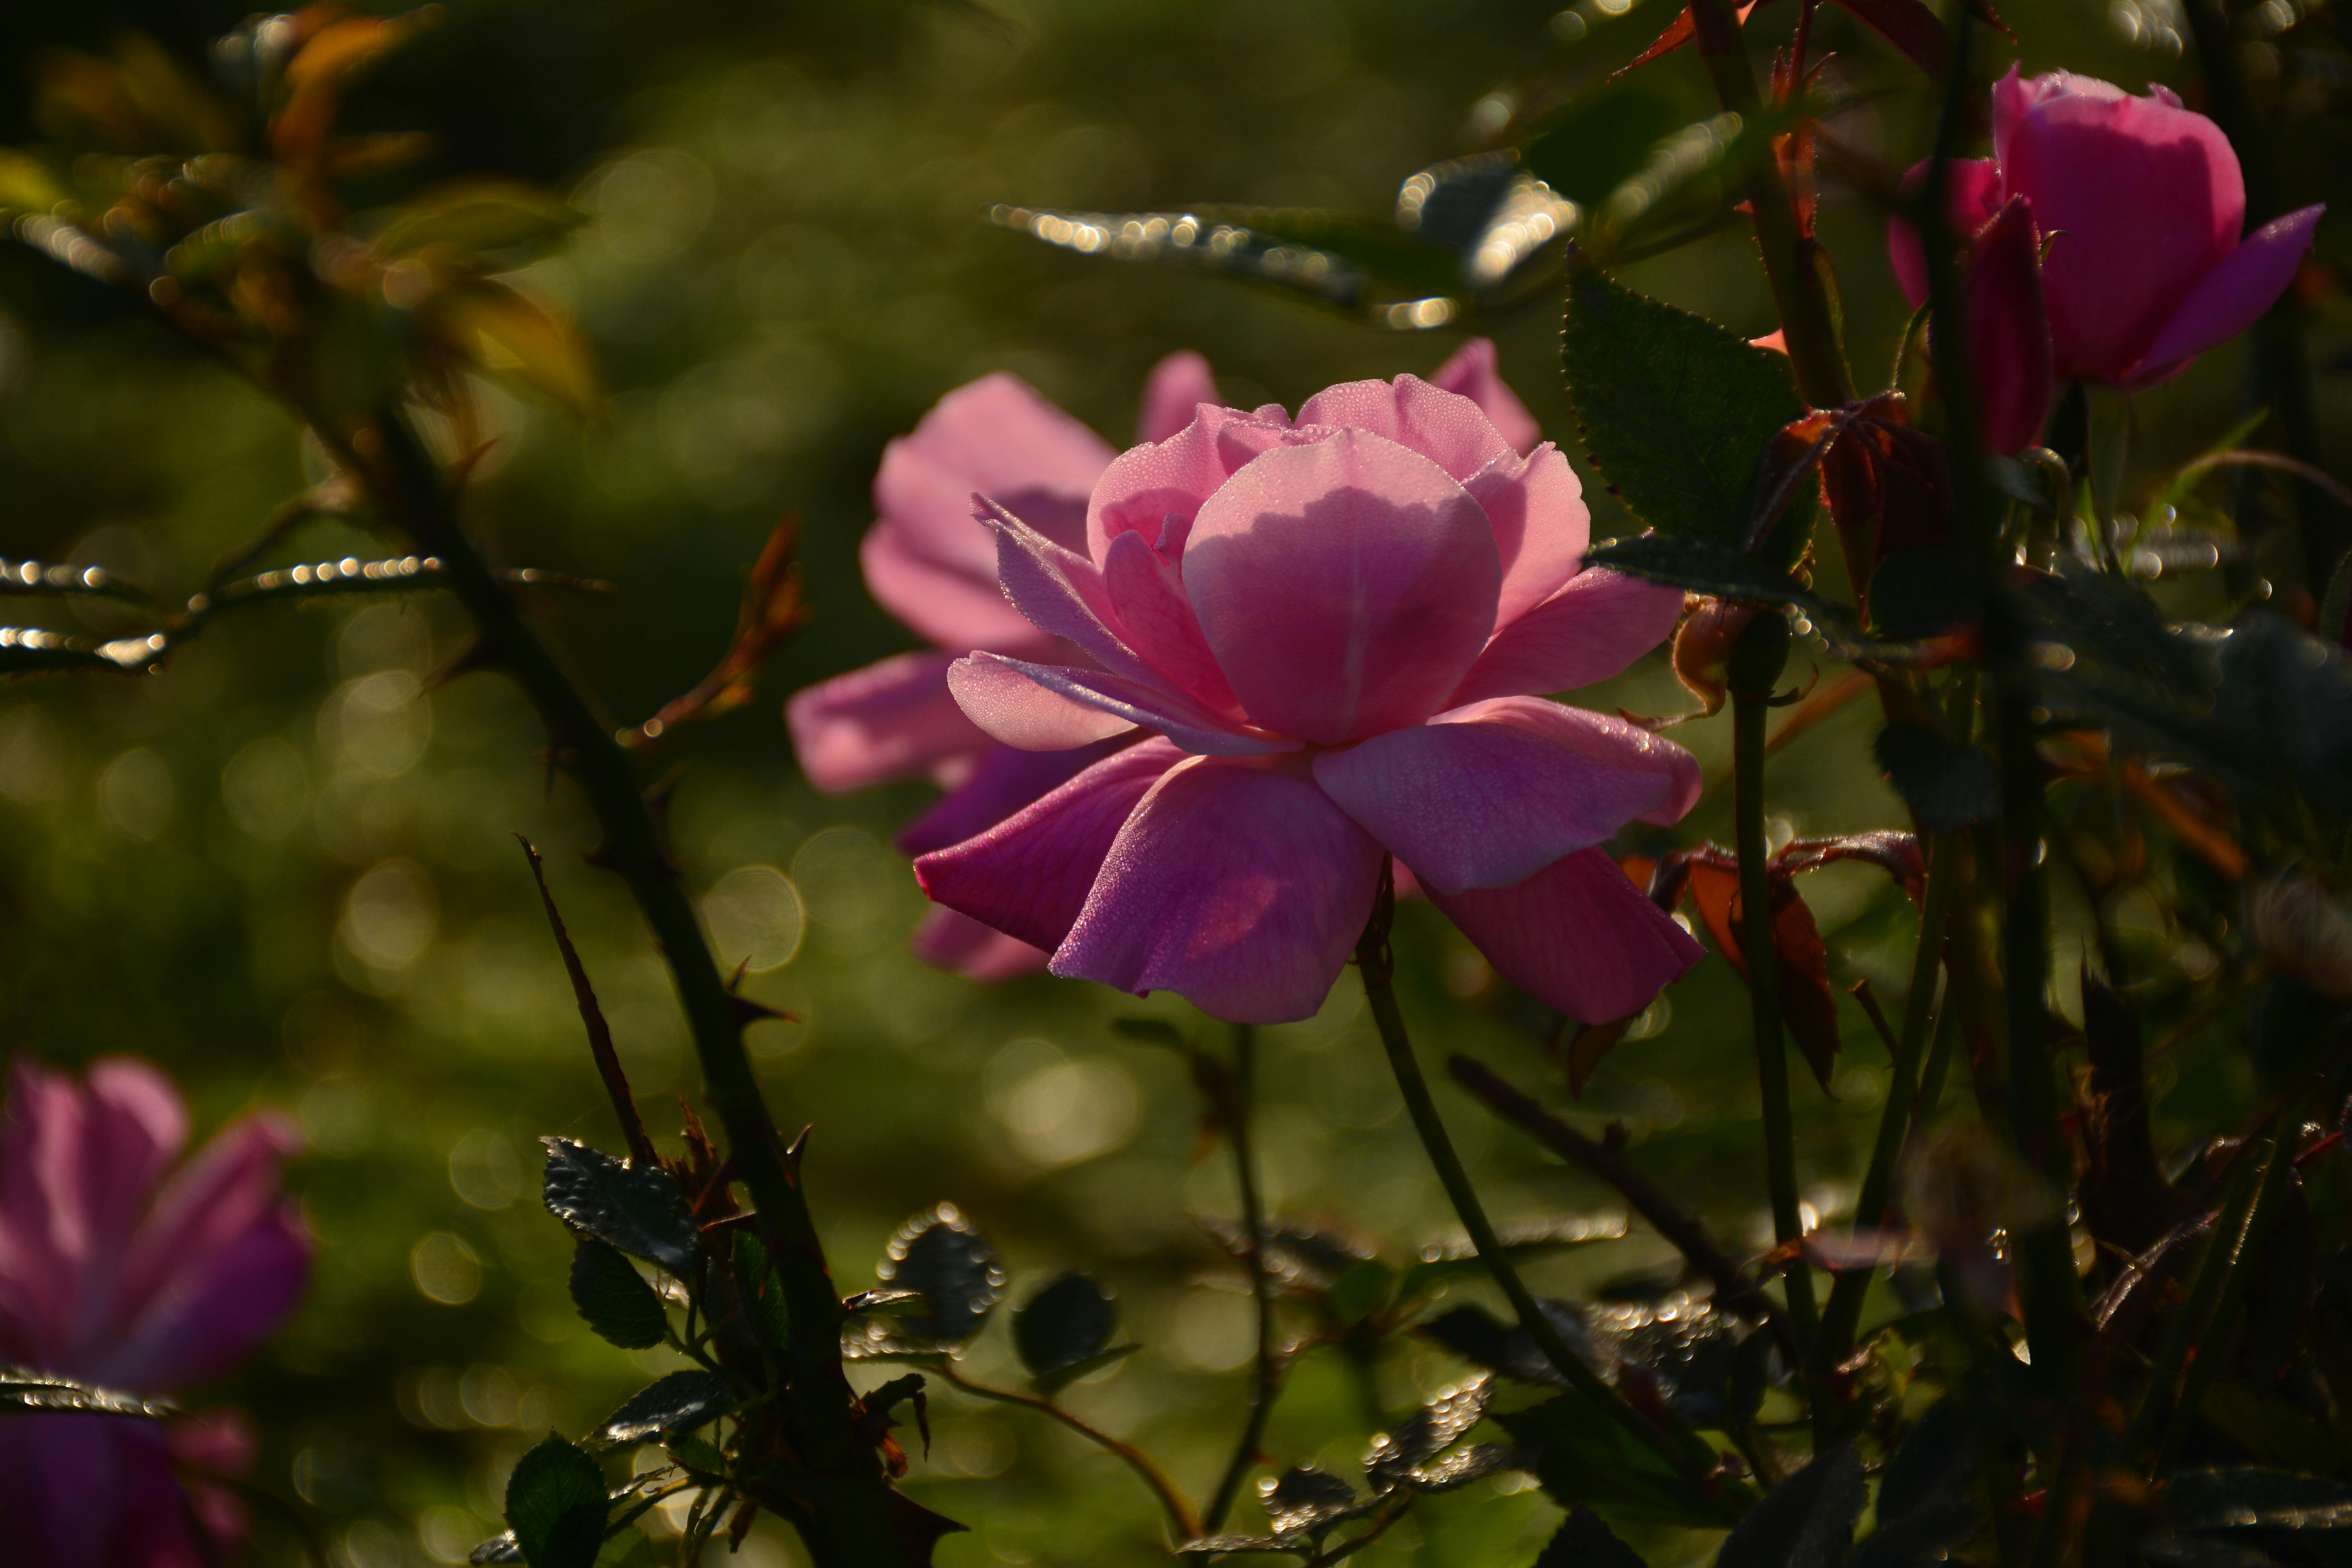 Free stock photo of Good Morning, Pink Rose, rose